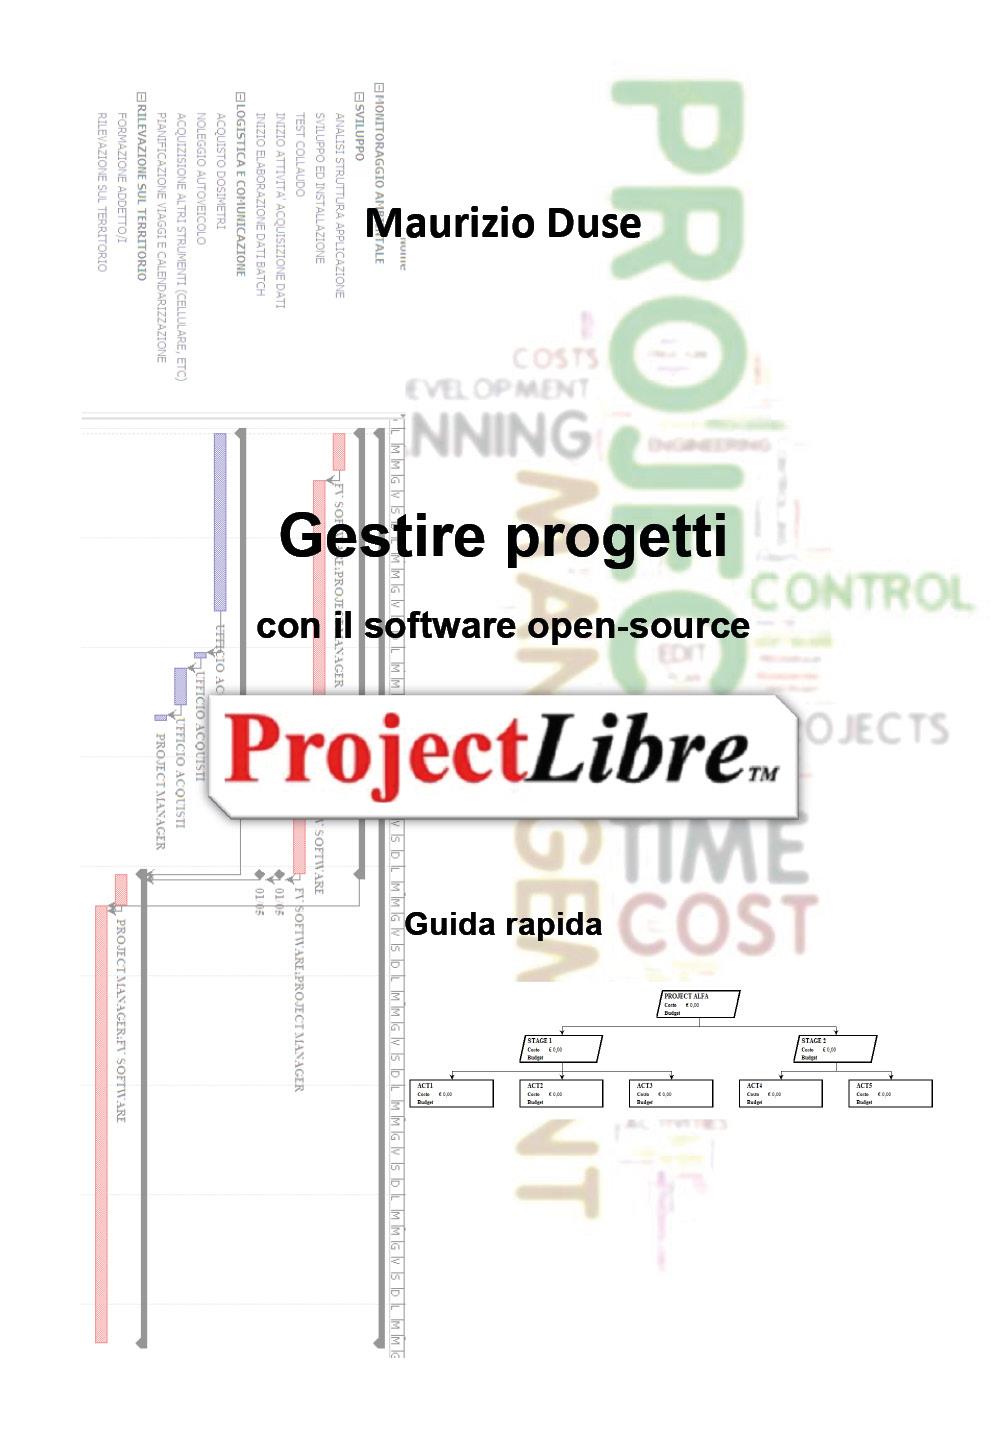 Gestire progetti con il software open-source ProjectLibre